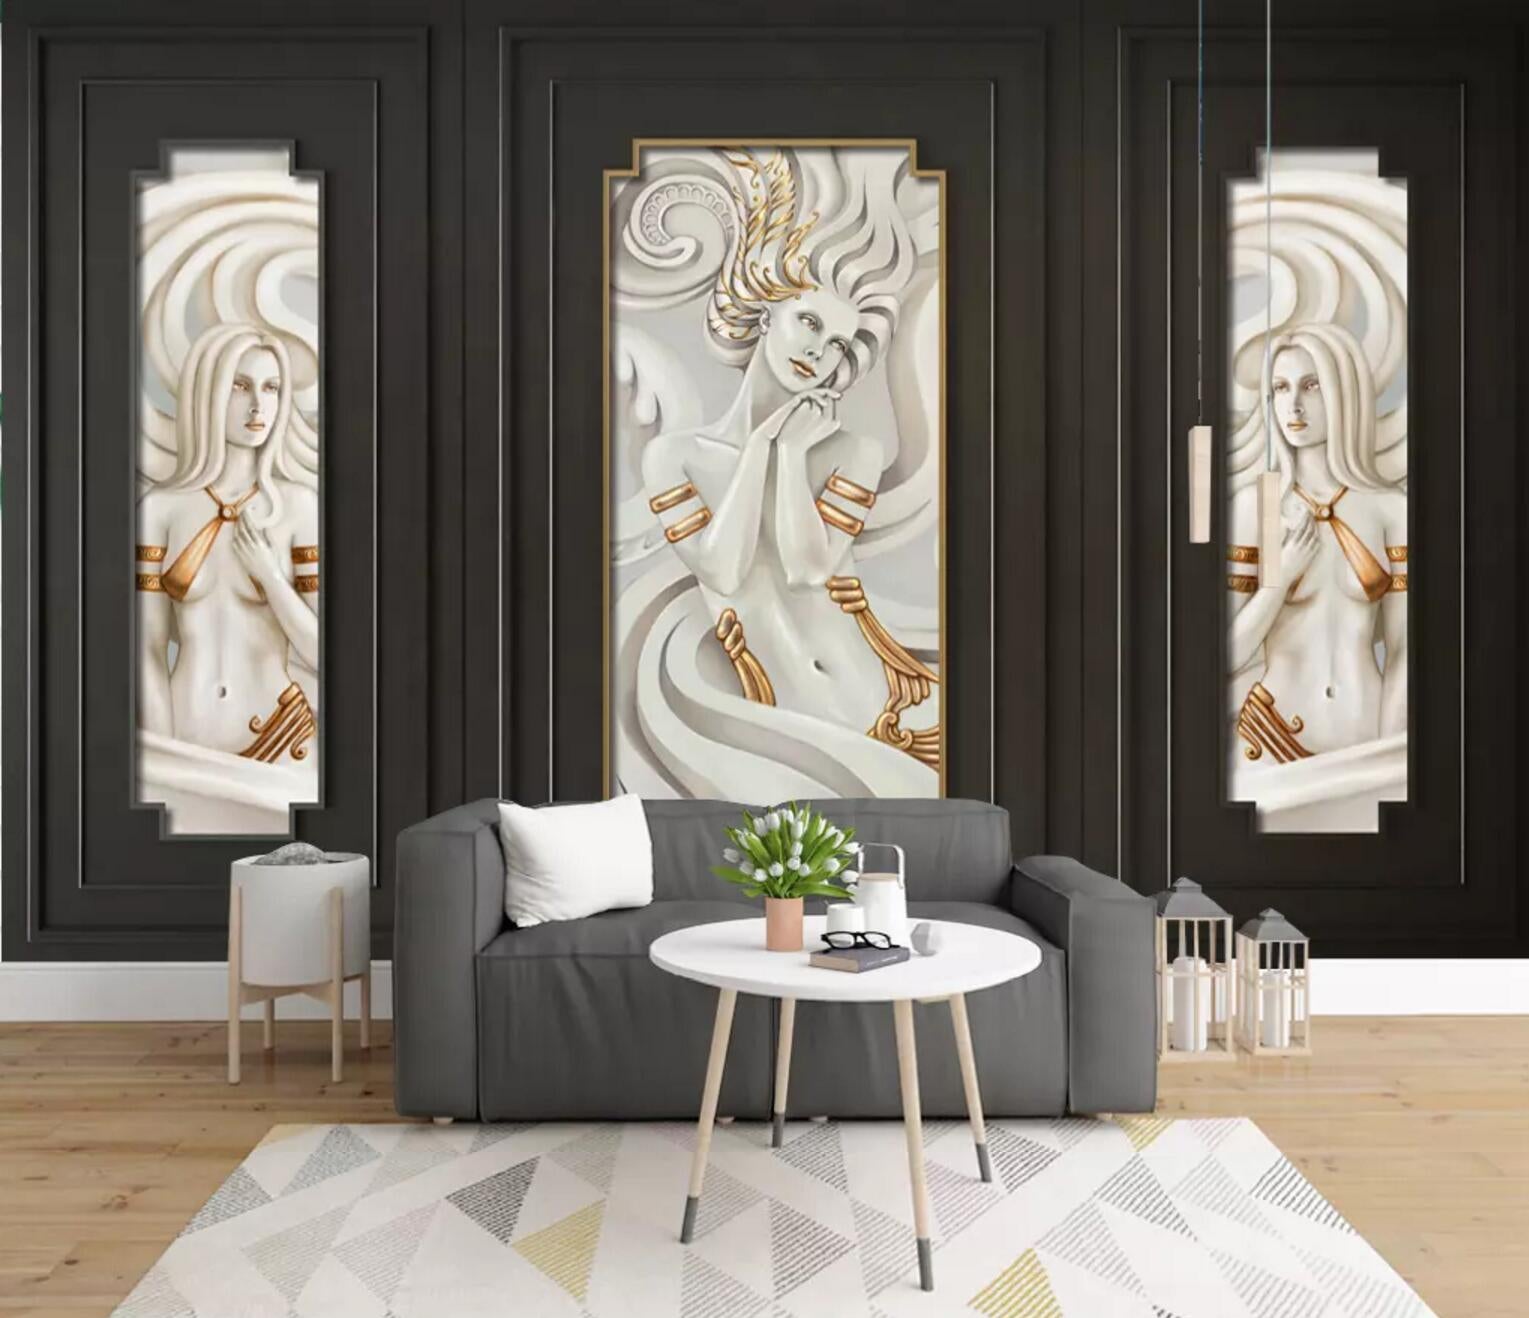 3D relief decorative effect wall mural wallpaper 427- Jess Art Decoration